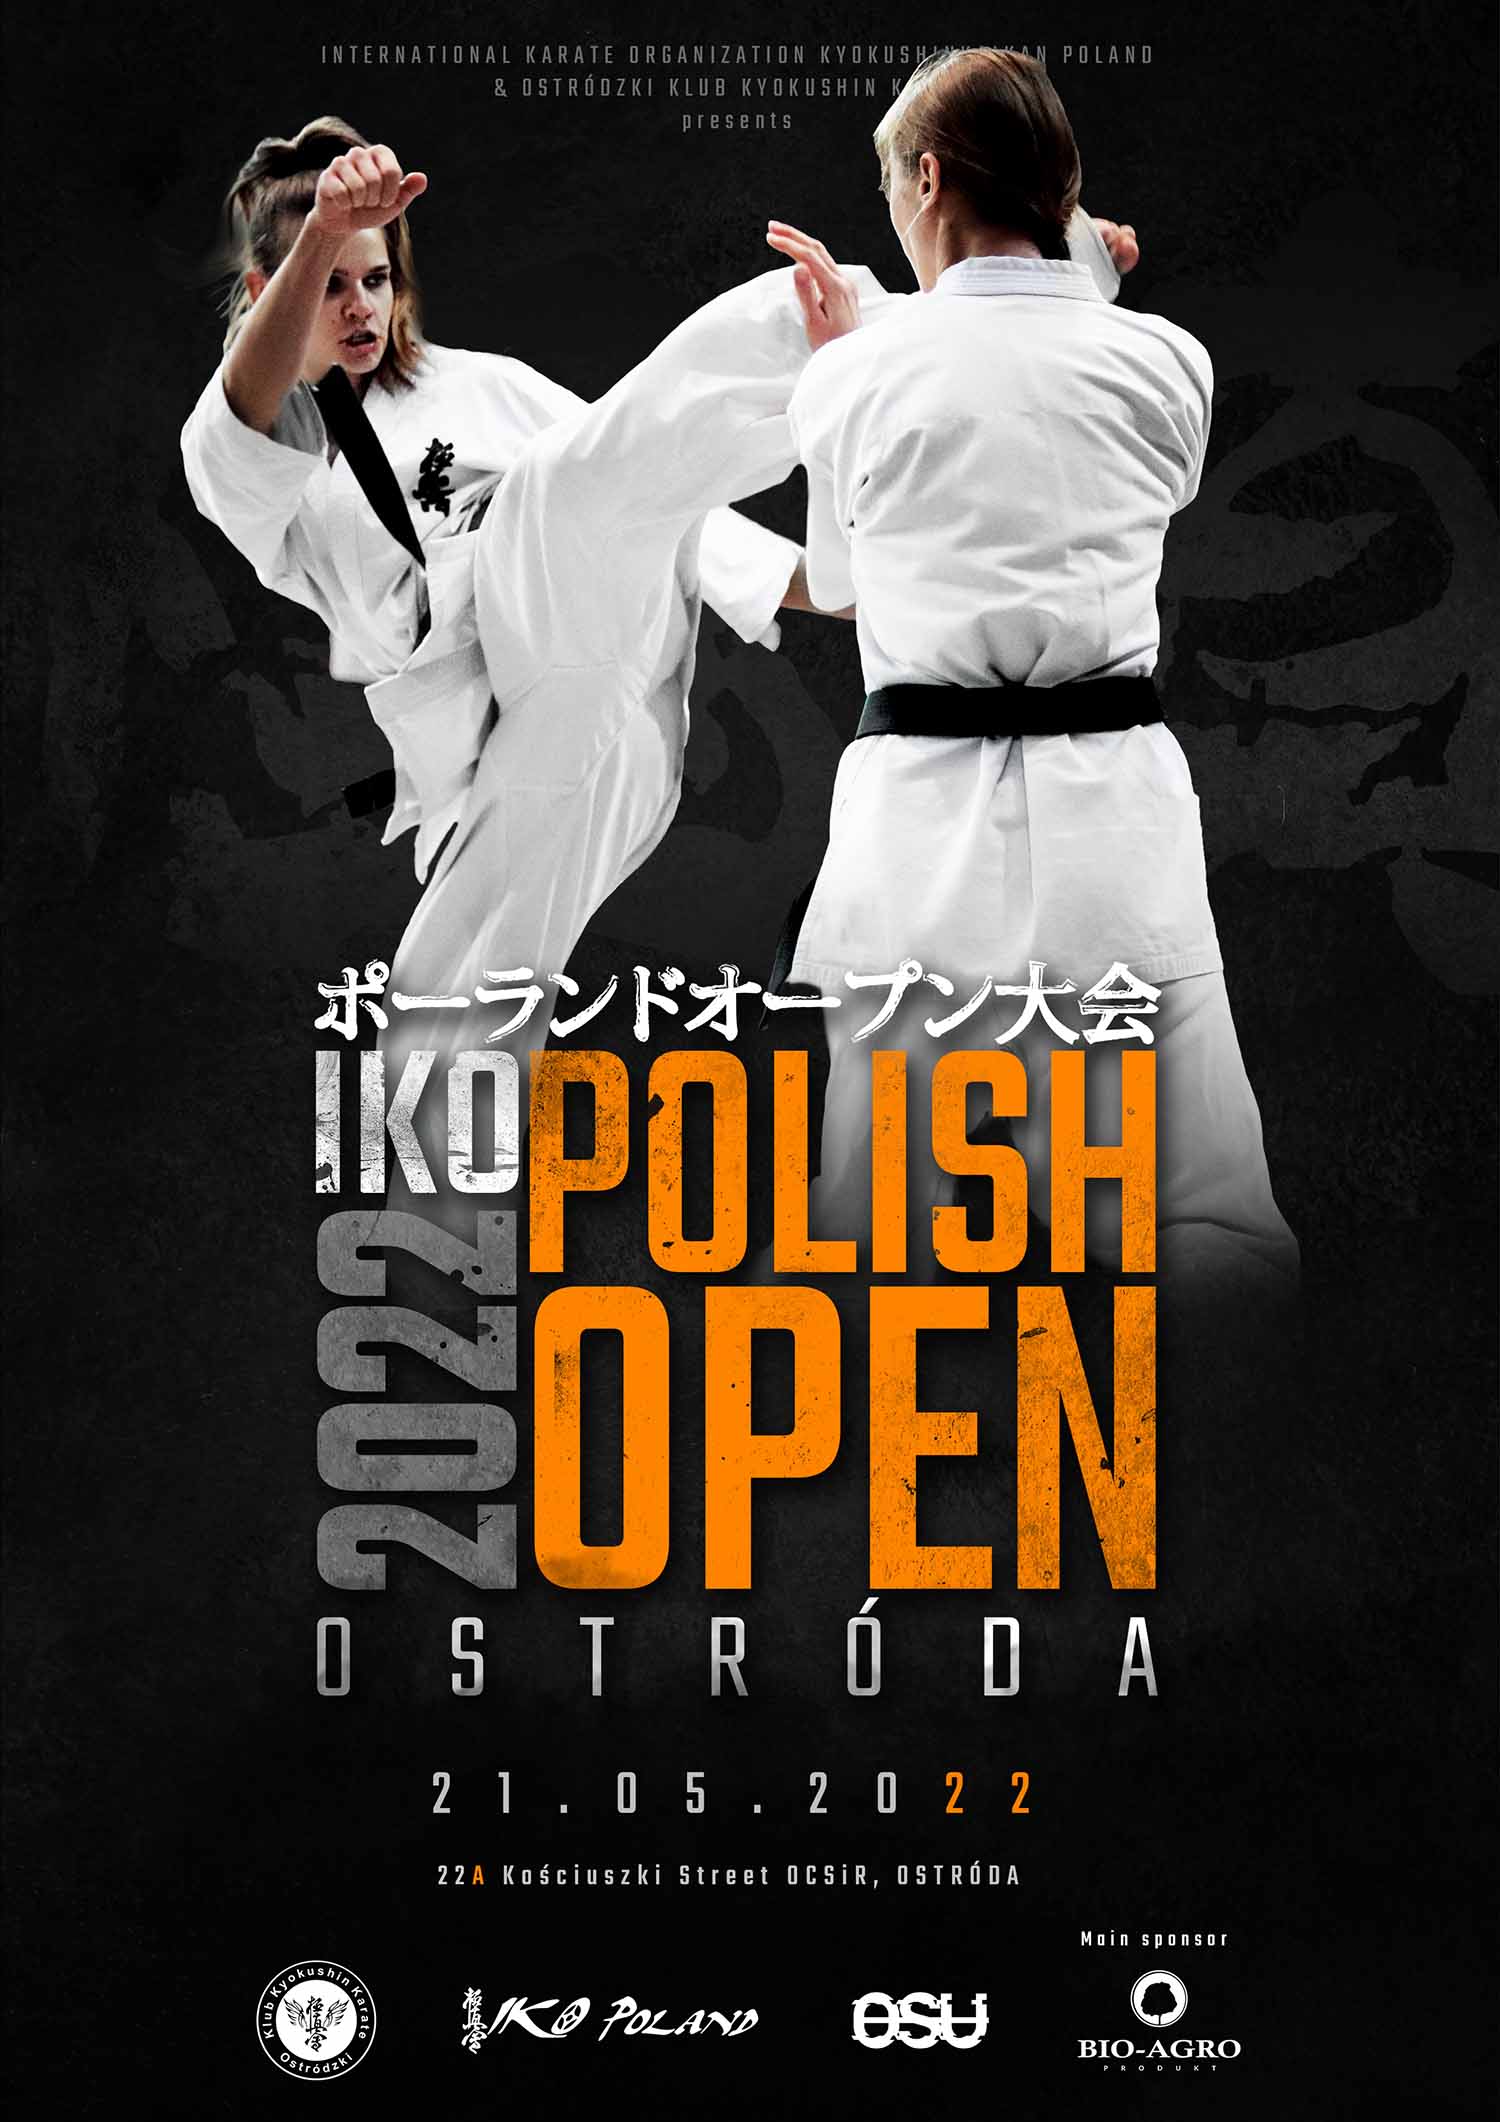 IKO Polish Open 2022